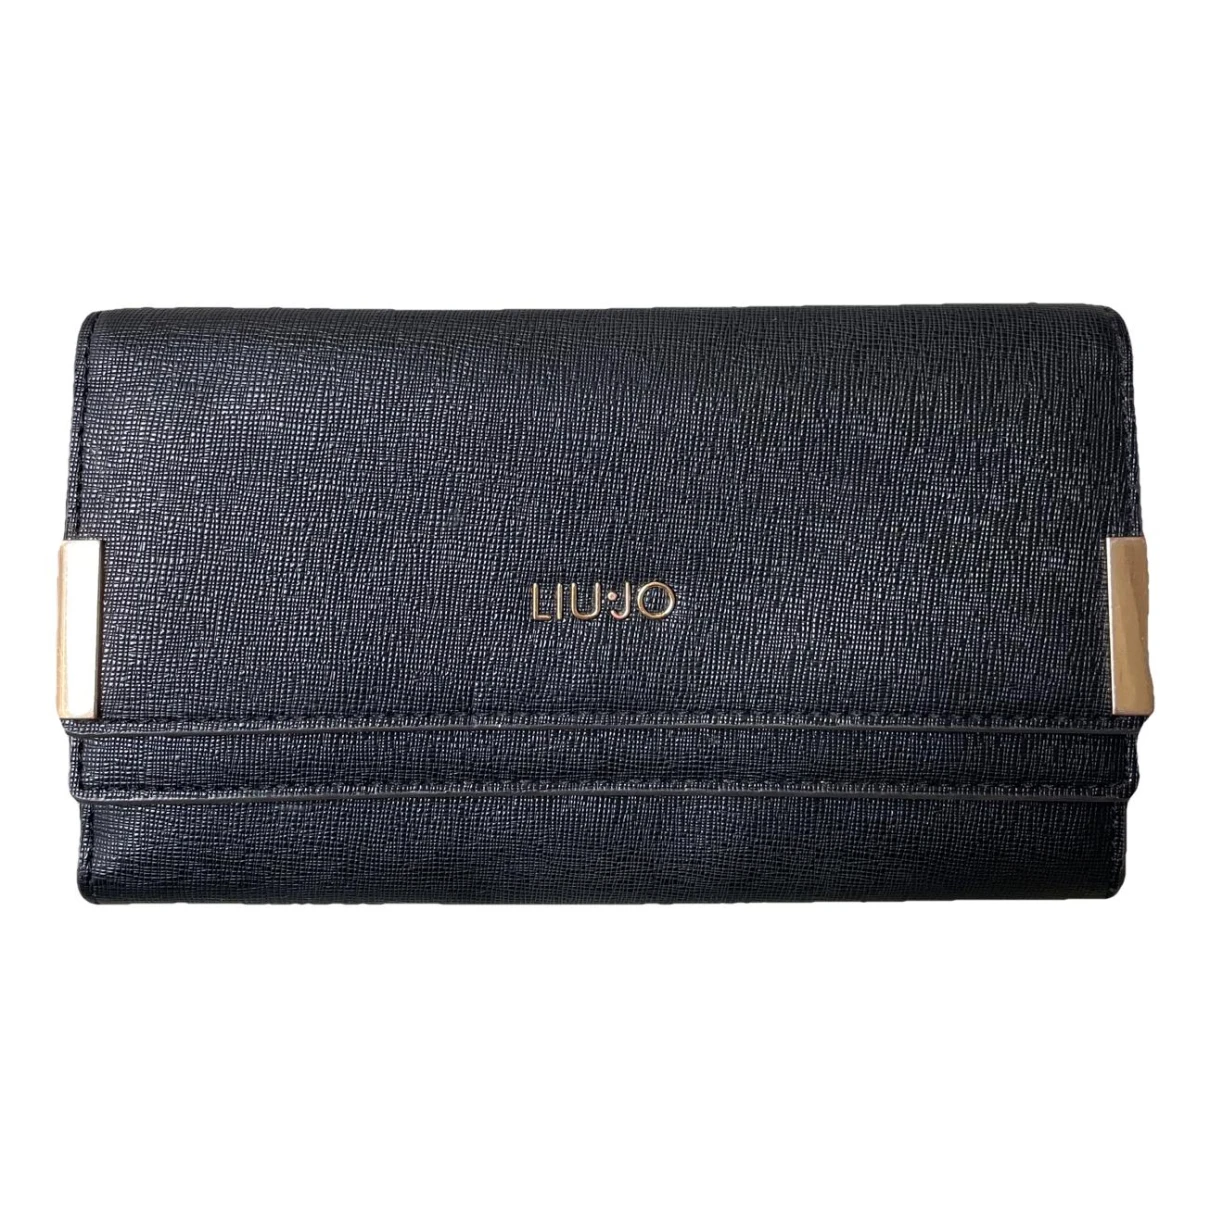 Pre-owned Liujo Vegan Leather Wallet In Black